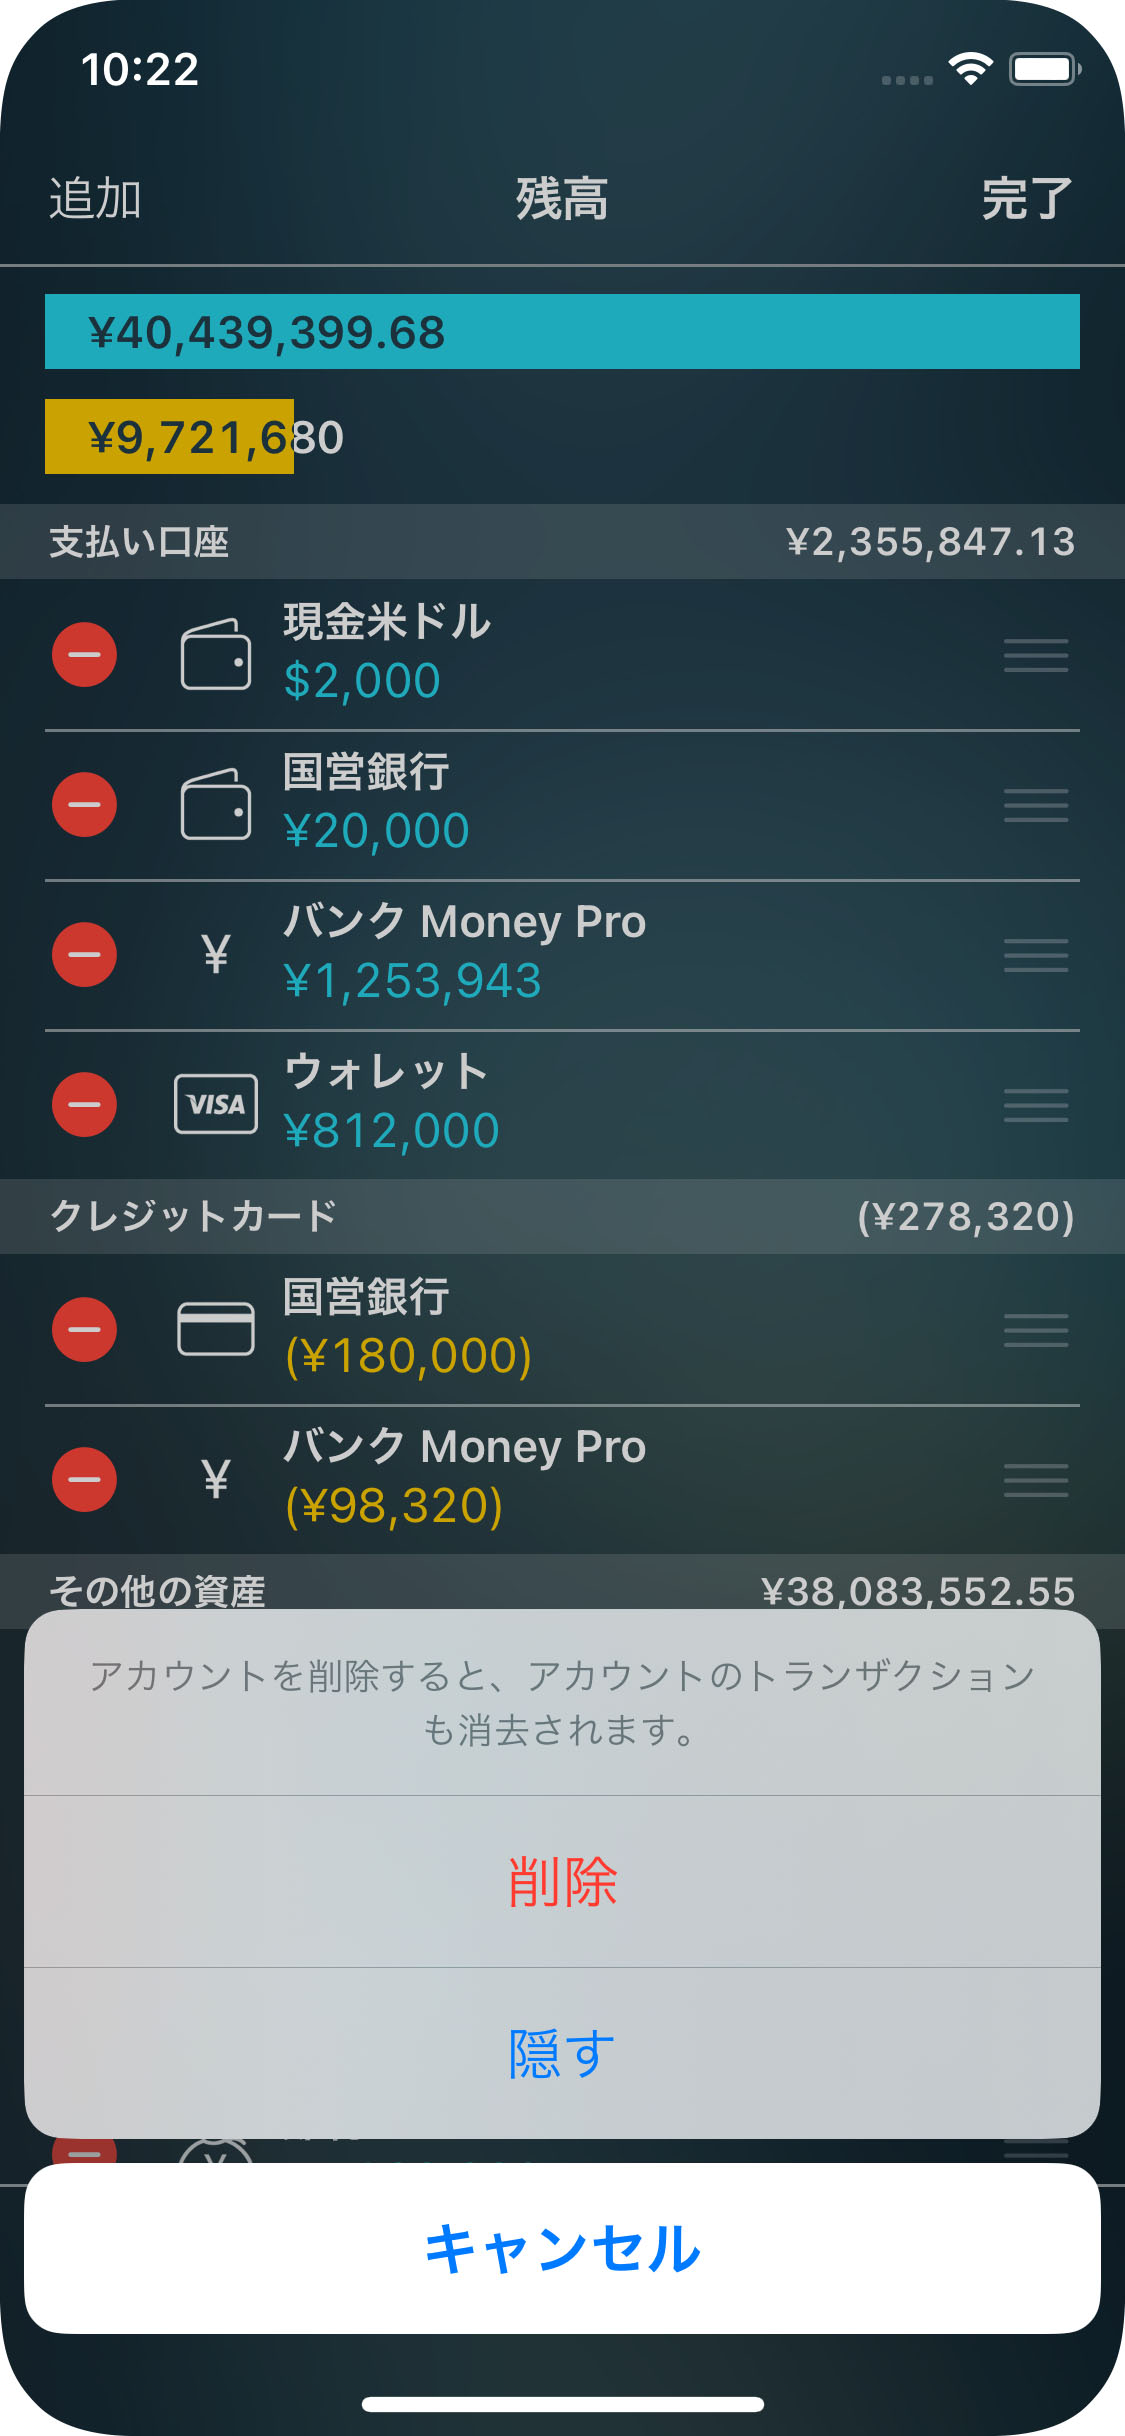 Money Pro - 勘定/ 口座の削除 - iPhone